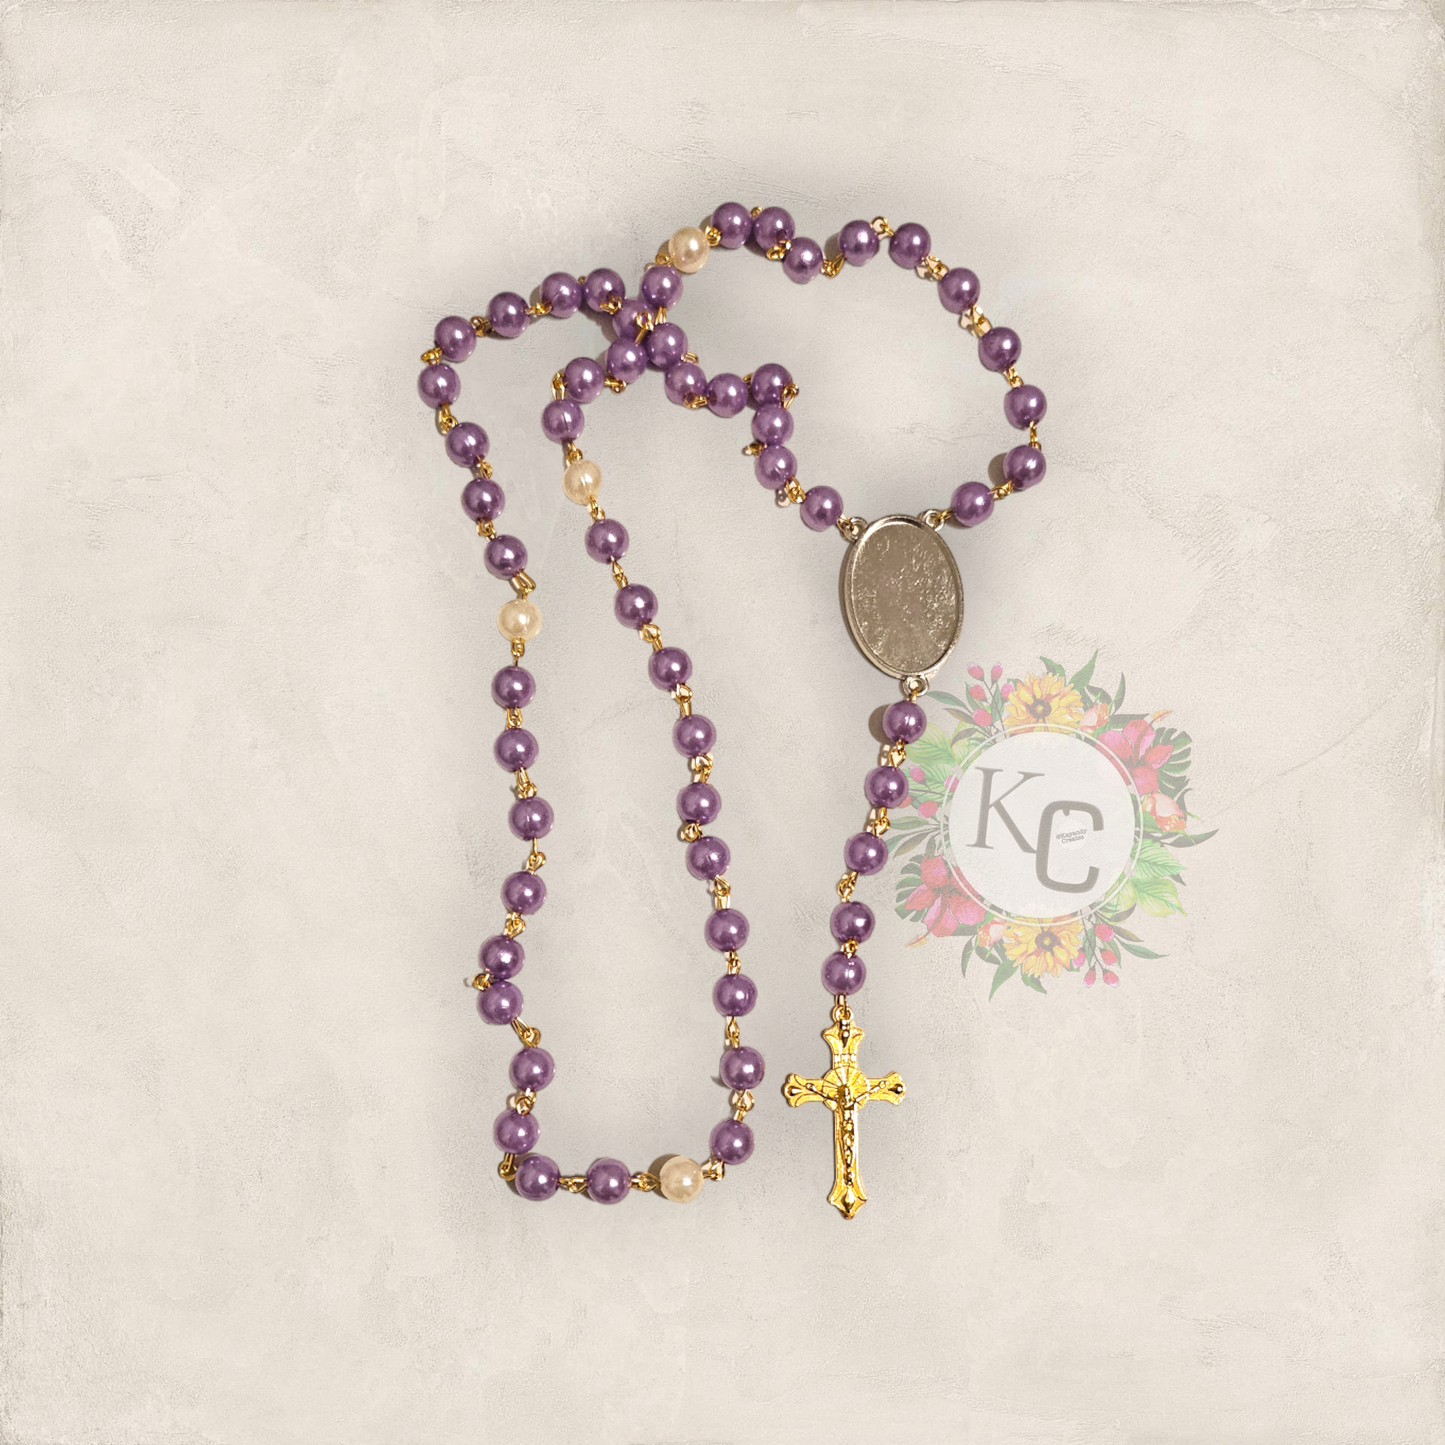 Custom Photo Rosary